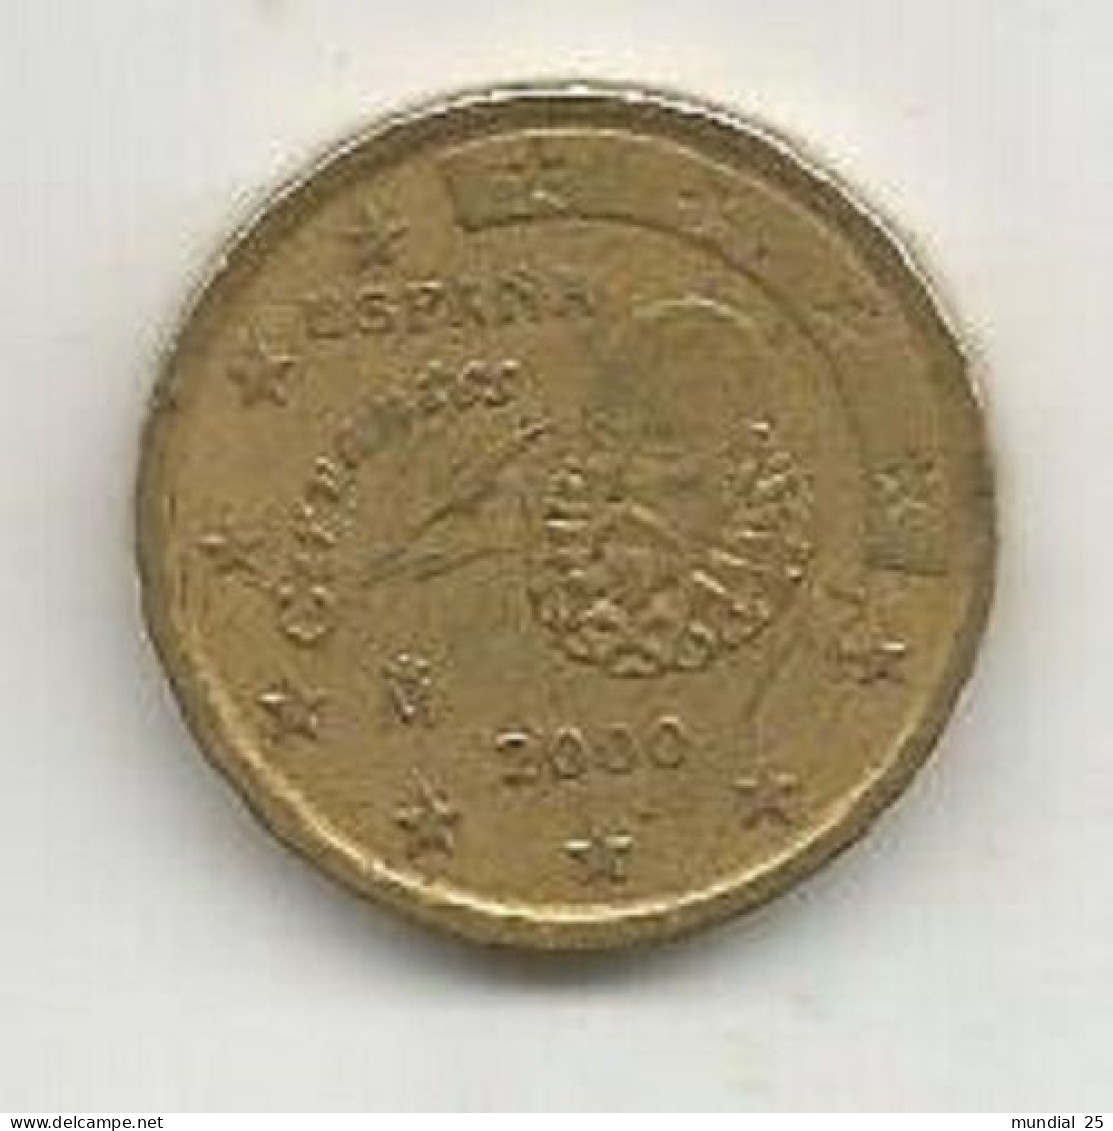 SPAIN 10 EURO CENT 2000 M - Spanien